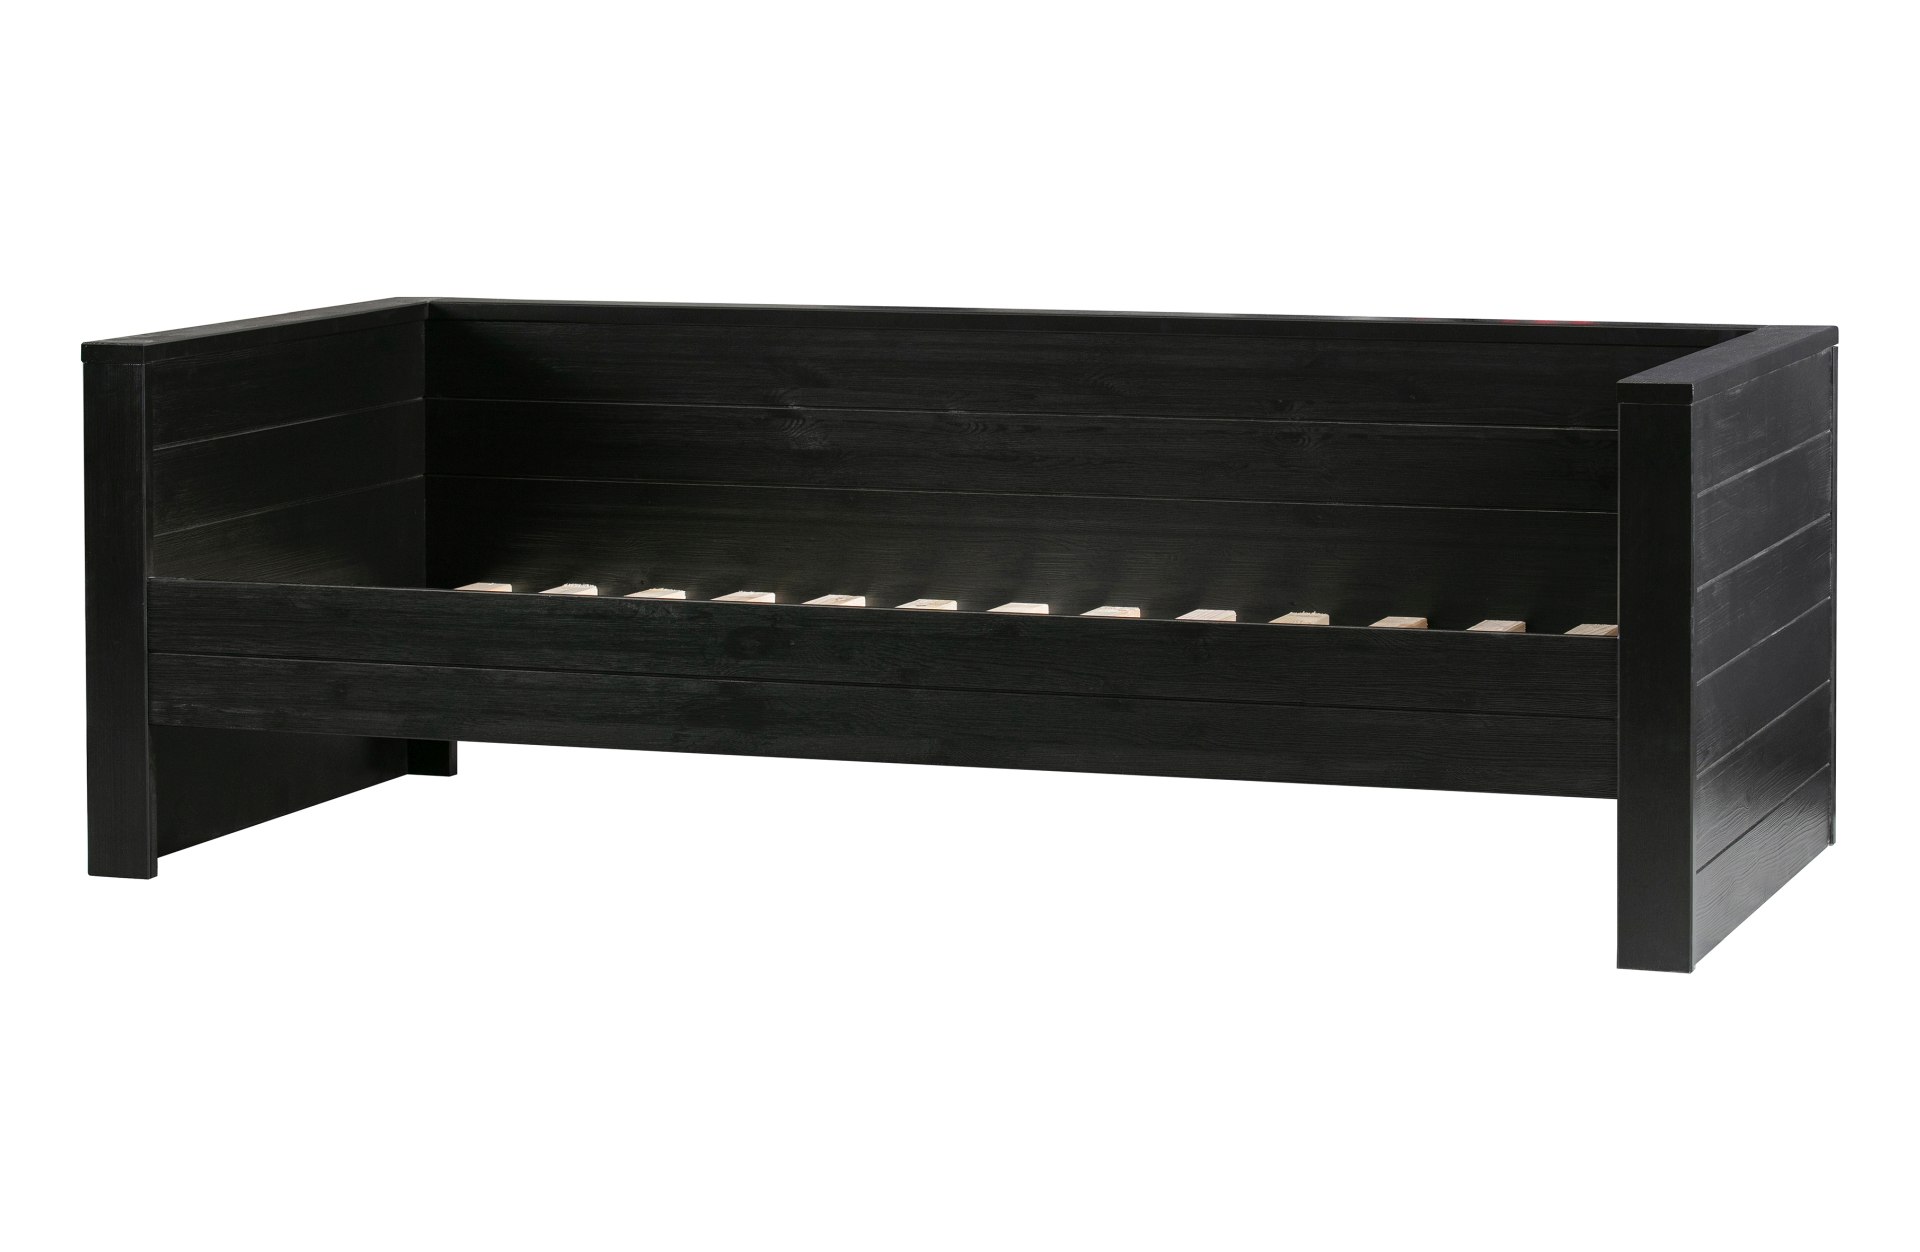 Das Bettgestell Dennis Sofabett wurde aus Kiefernholz gefertigt und besitzt einen schwarzen Farbton. Die Maße des Bettes sind 90x200 cm.